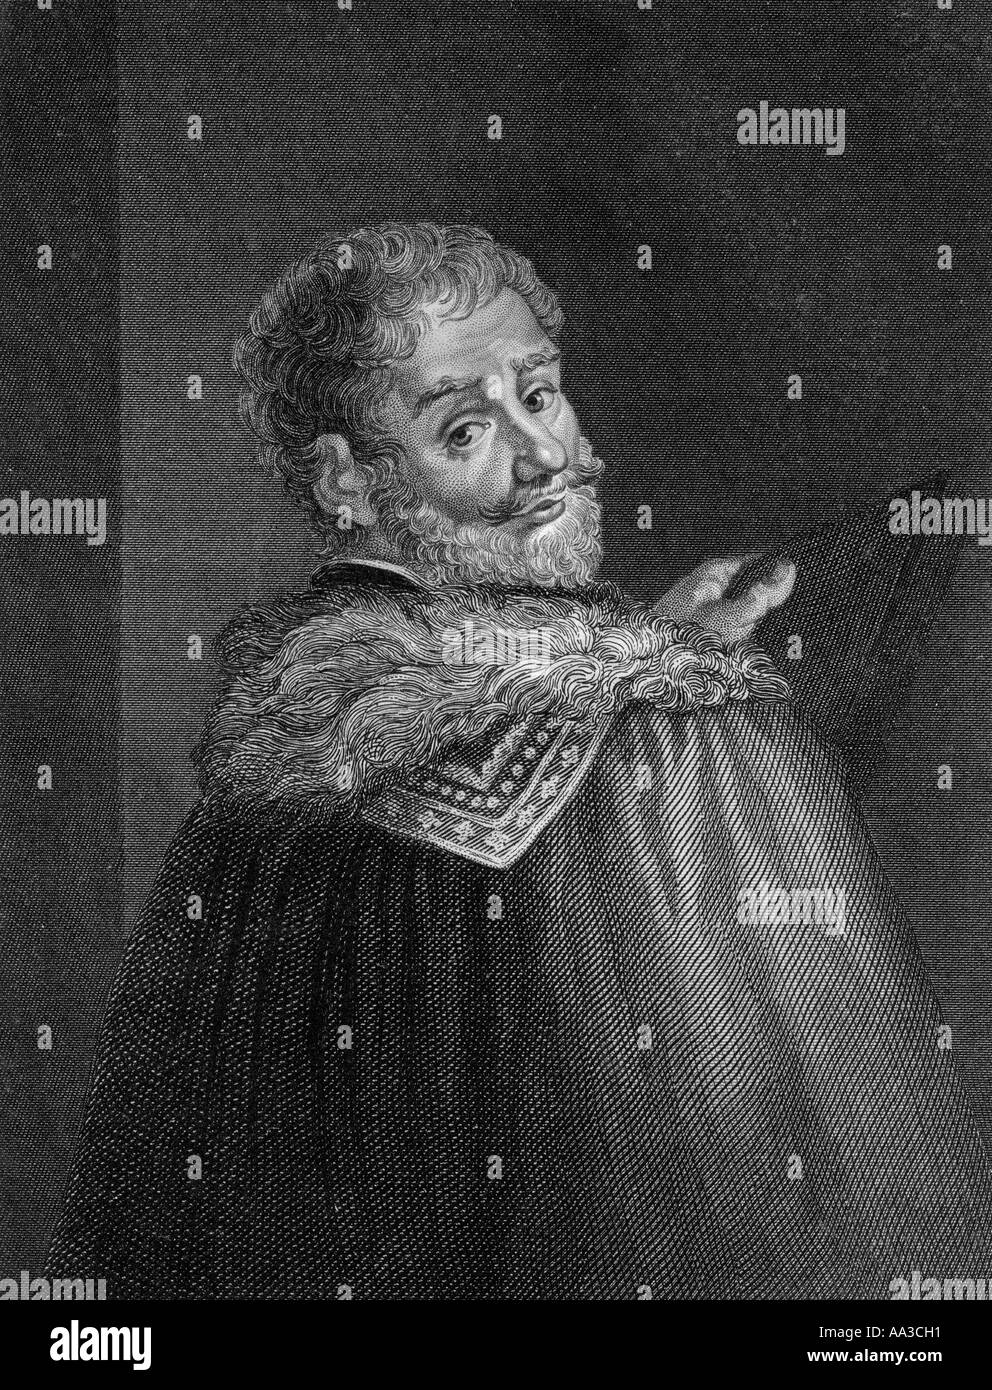 Benvenuto Cellini, 1500 - 1571. Italienischer Goldschmied, Bildhauer, Zeichner, Soldat, Musiker und Künstler Stockfoto